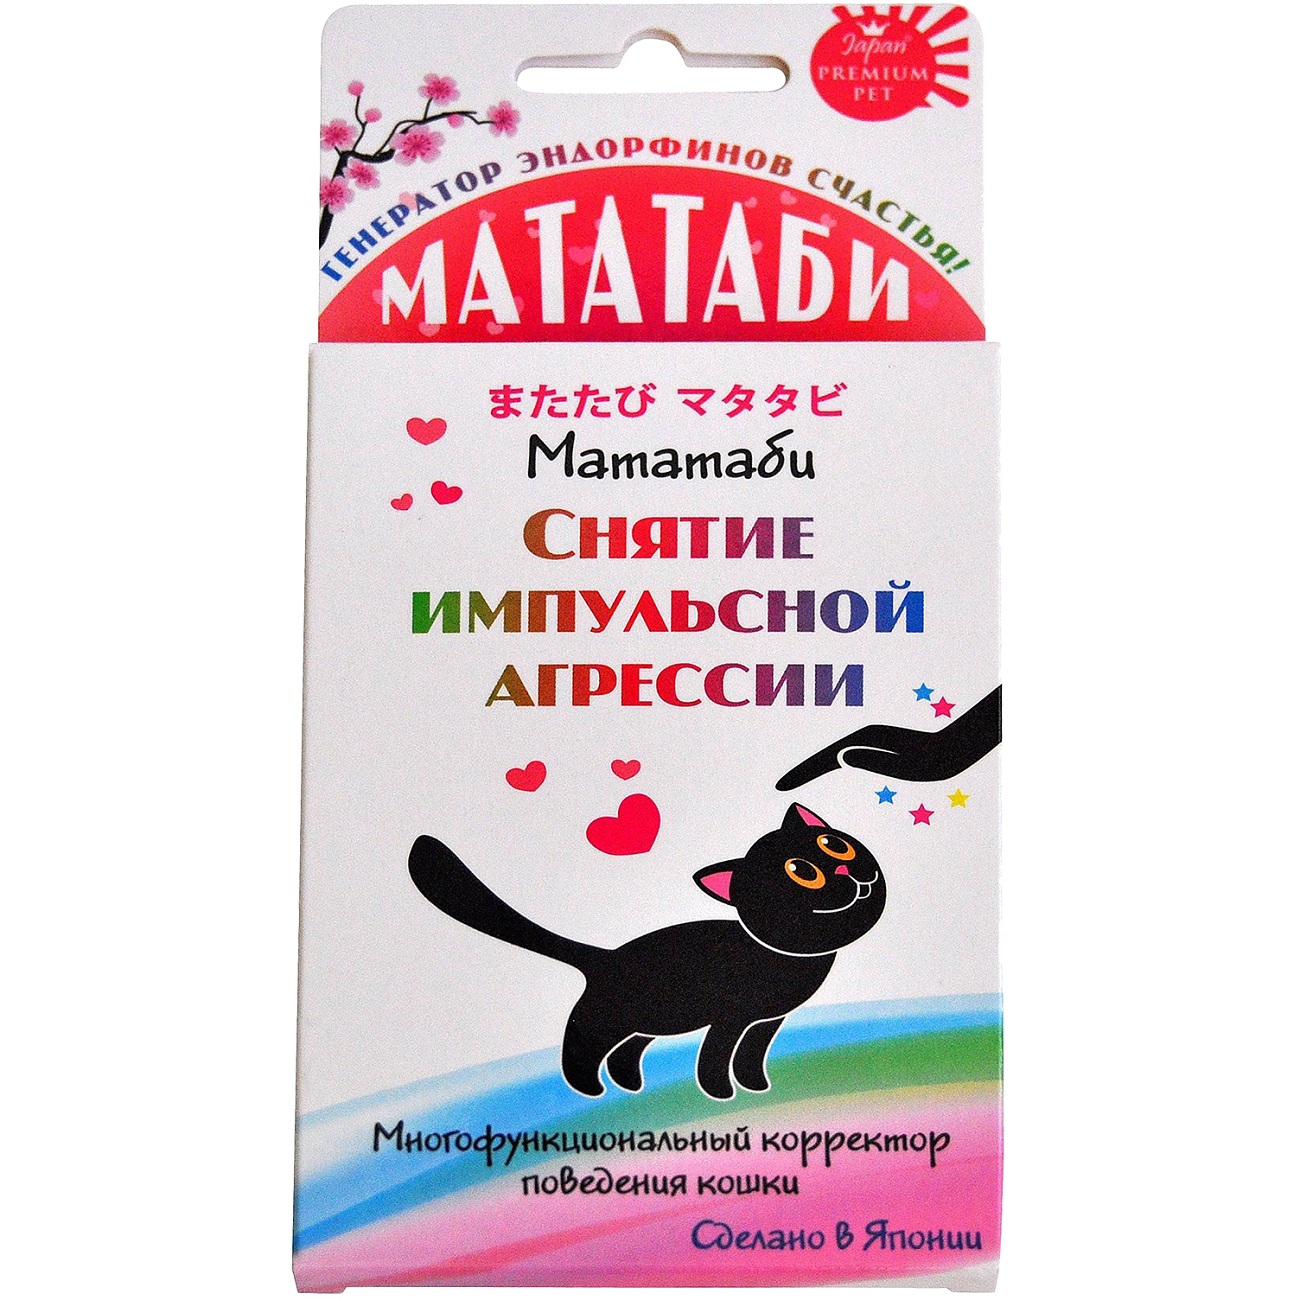 Средство Japan premium pet Мататаби для снятия импульсной агрессии кошек 1 г - фото 1